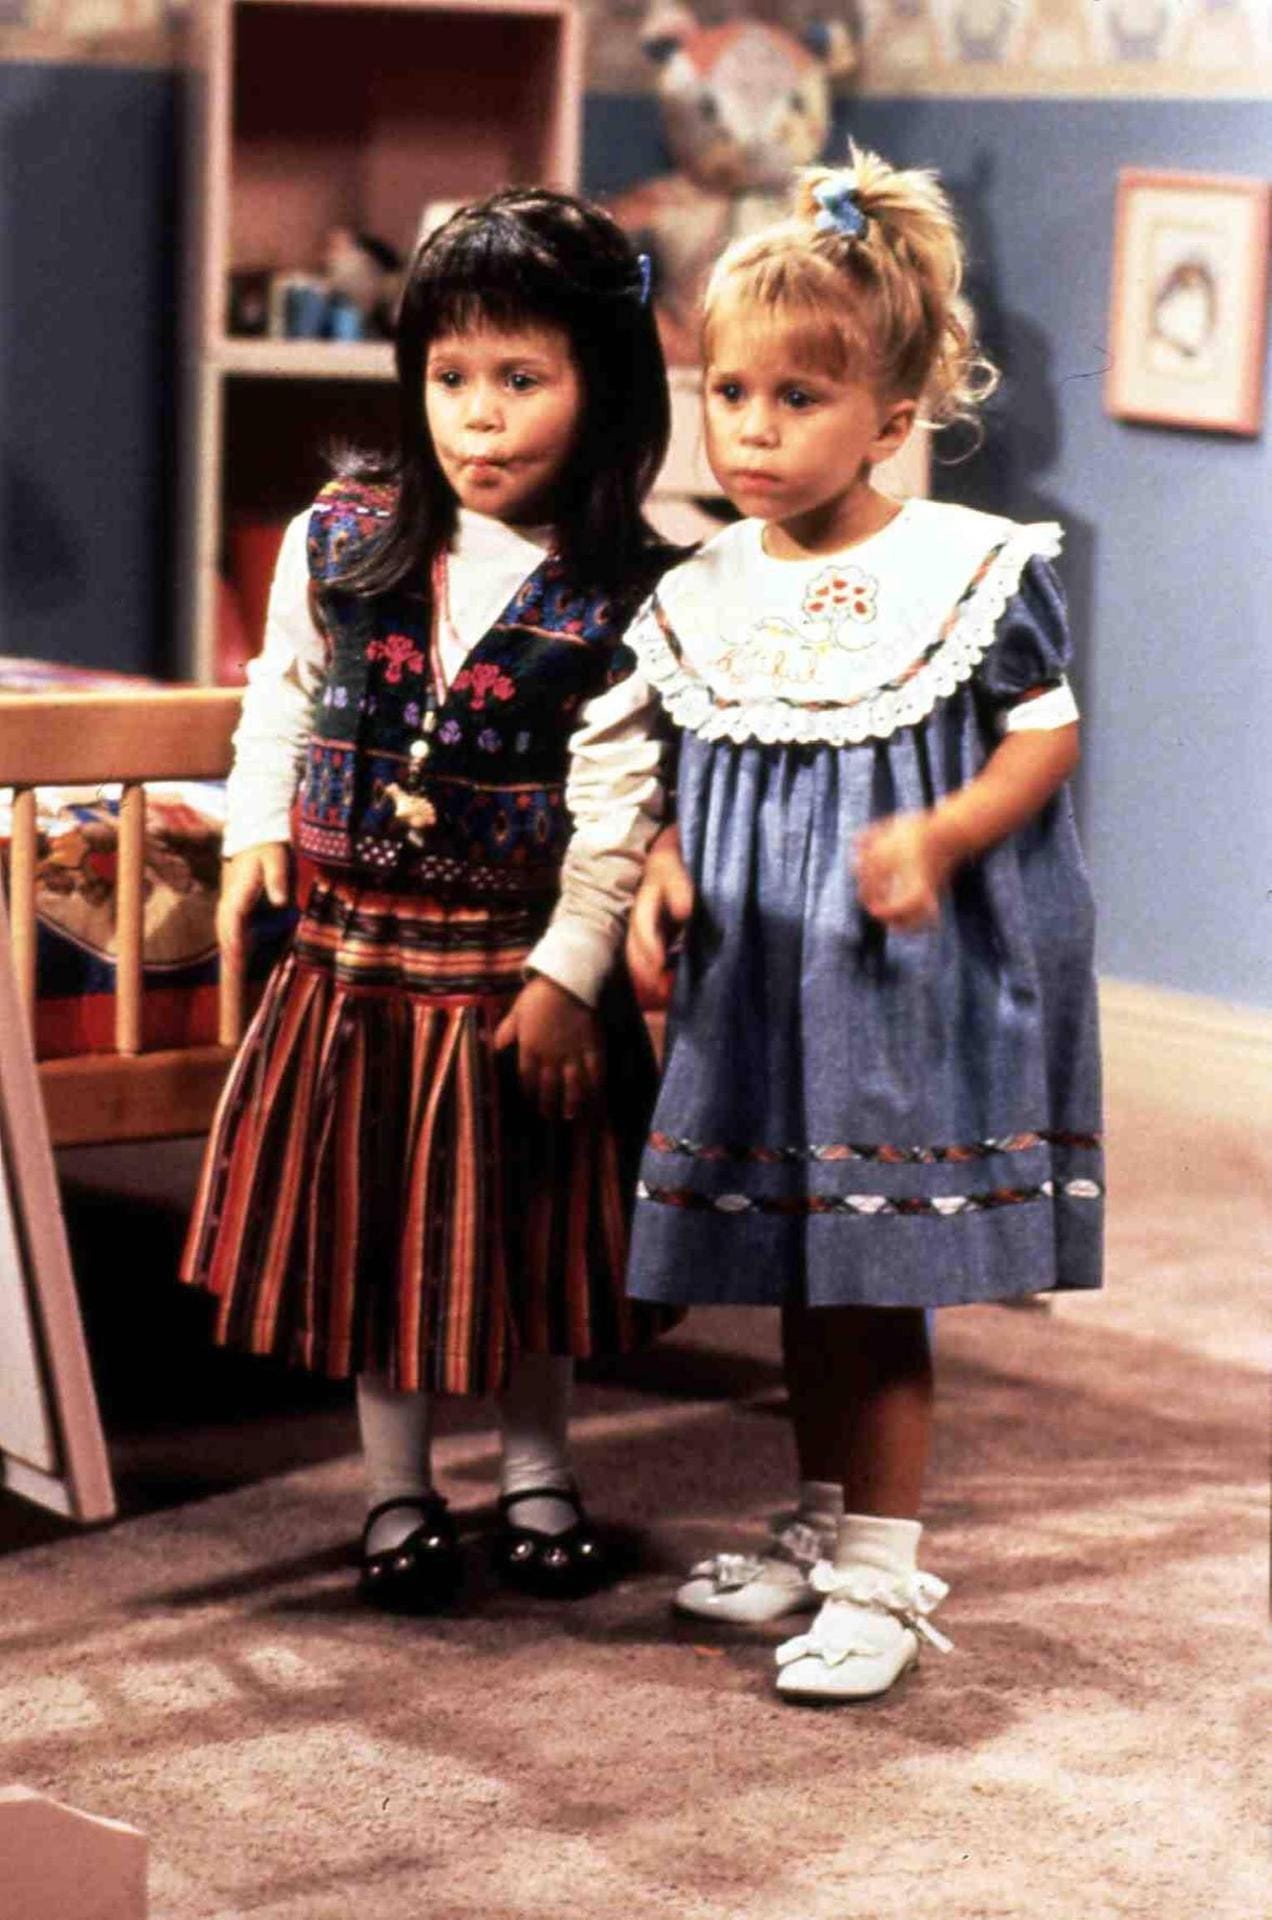 1987 begann der Stern der Olsen-Twins in Hollywood zu leuchten – im zarten Alter von neun Monaten, als ihre Mutter sie zum Casting der "Full House"-Sitcom schleppte. Bis 1995 verkörperten sie, anfänglich unter dem gemeinsamen Namen 'Mary Kate Ashley Olsen', in der Serie abwechselnd die Figur Michelle Elizabeth Tanner. Dies geschah aufgrund der US-amerikanischen Schutzbestimmungen für Kinder.